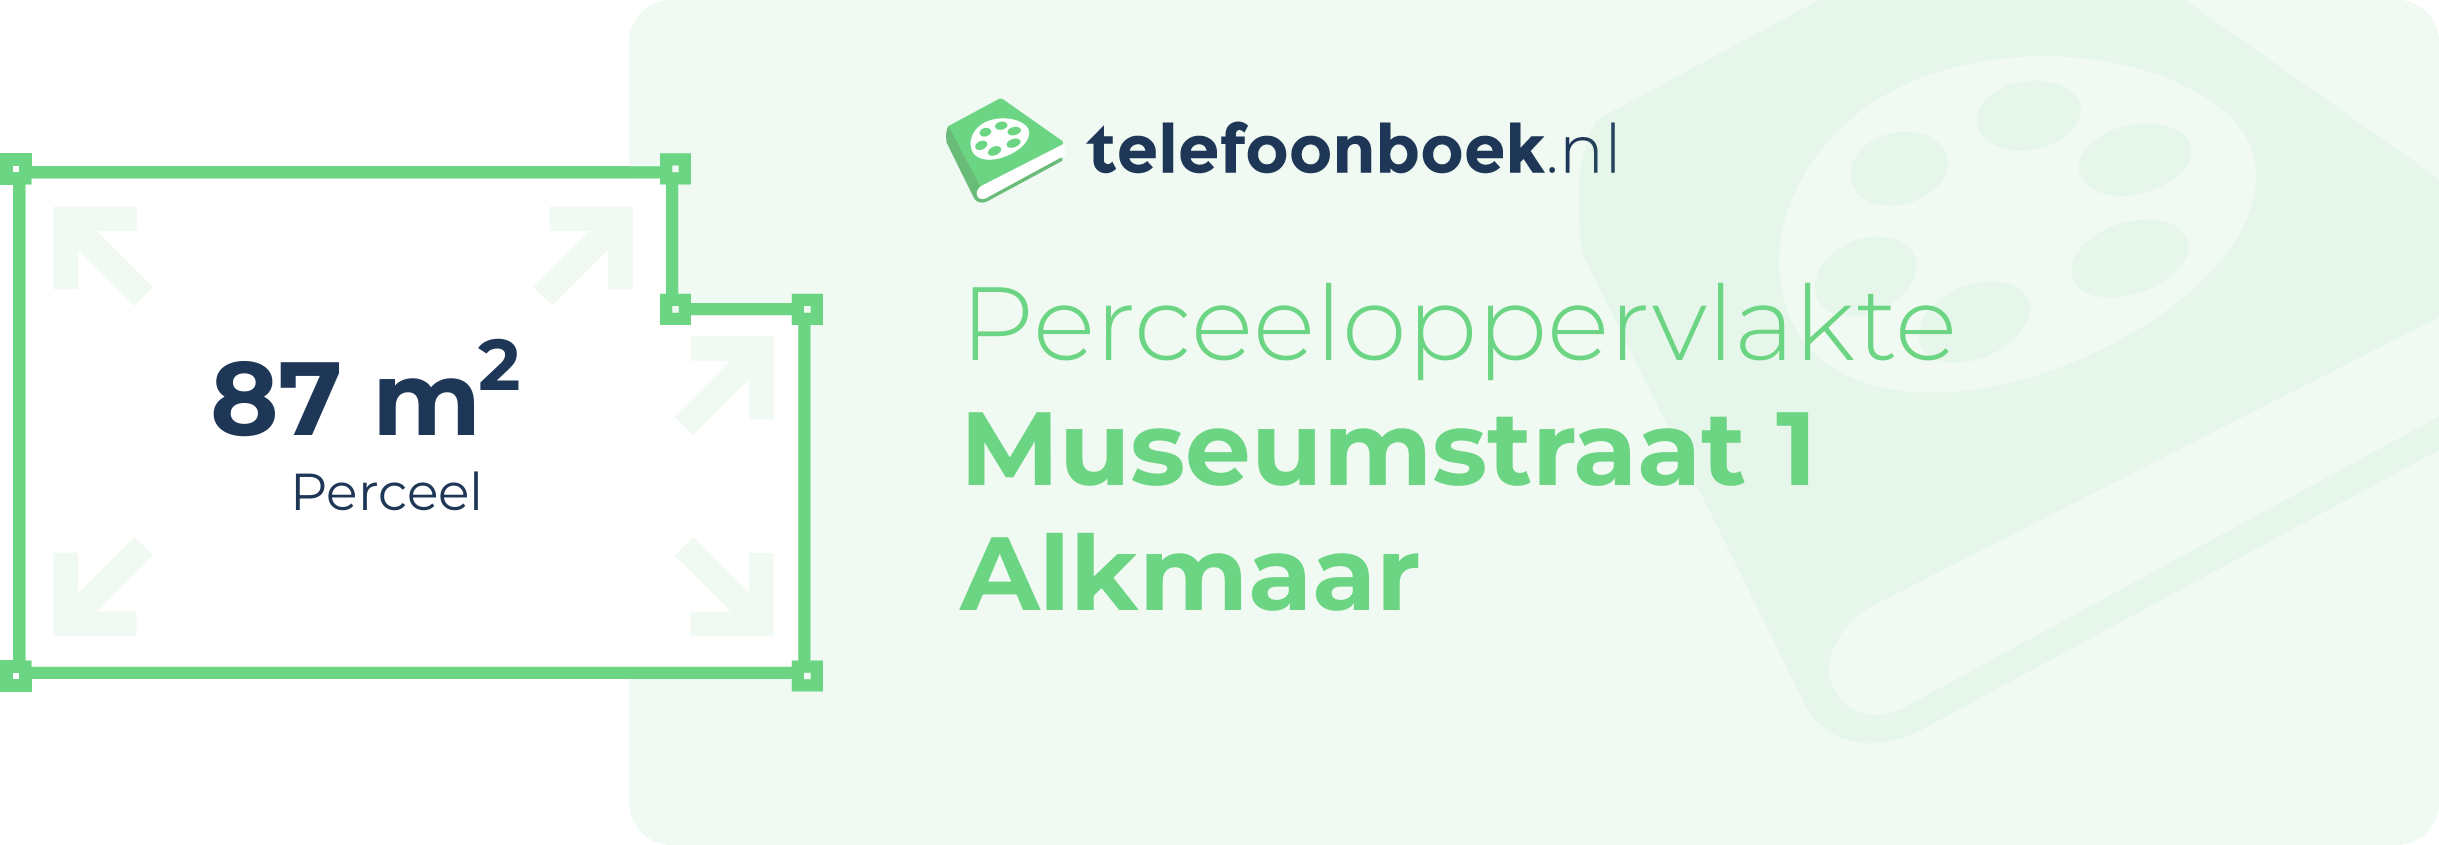 Perceeloppervlakte Museumstraat 1 Alkmaar